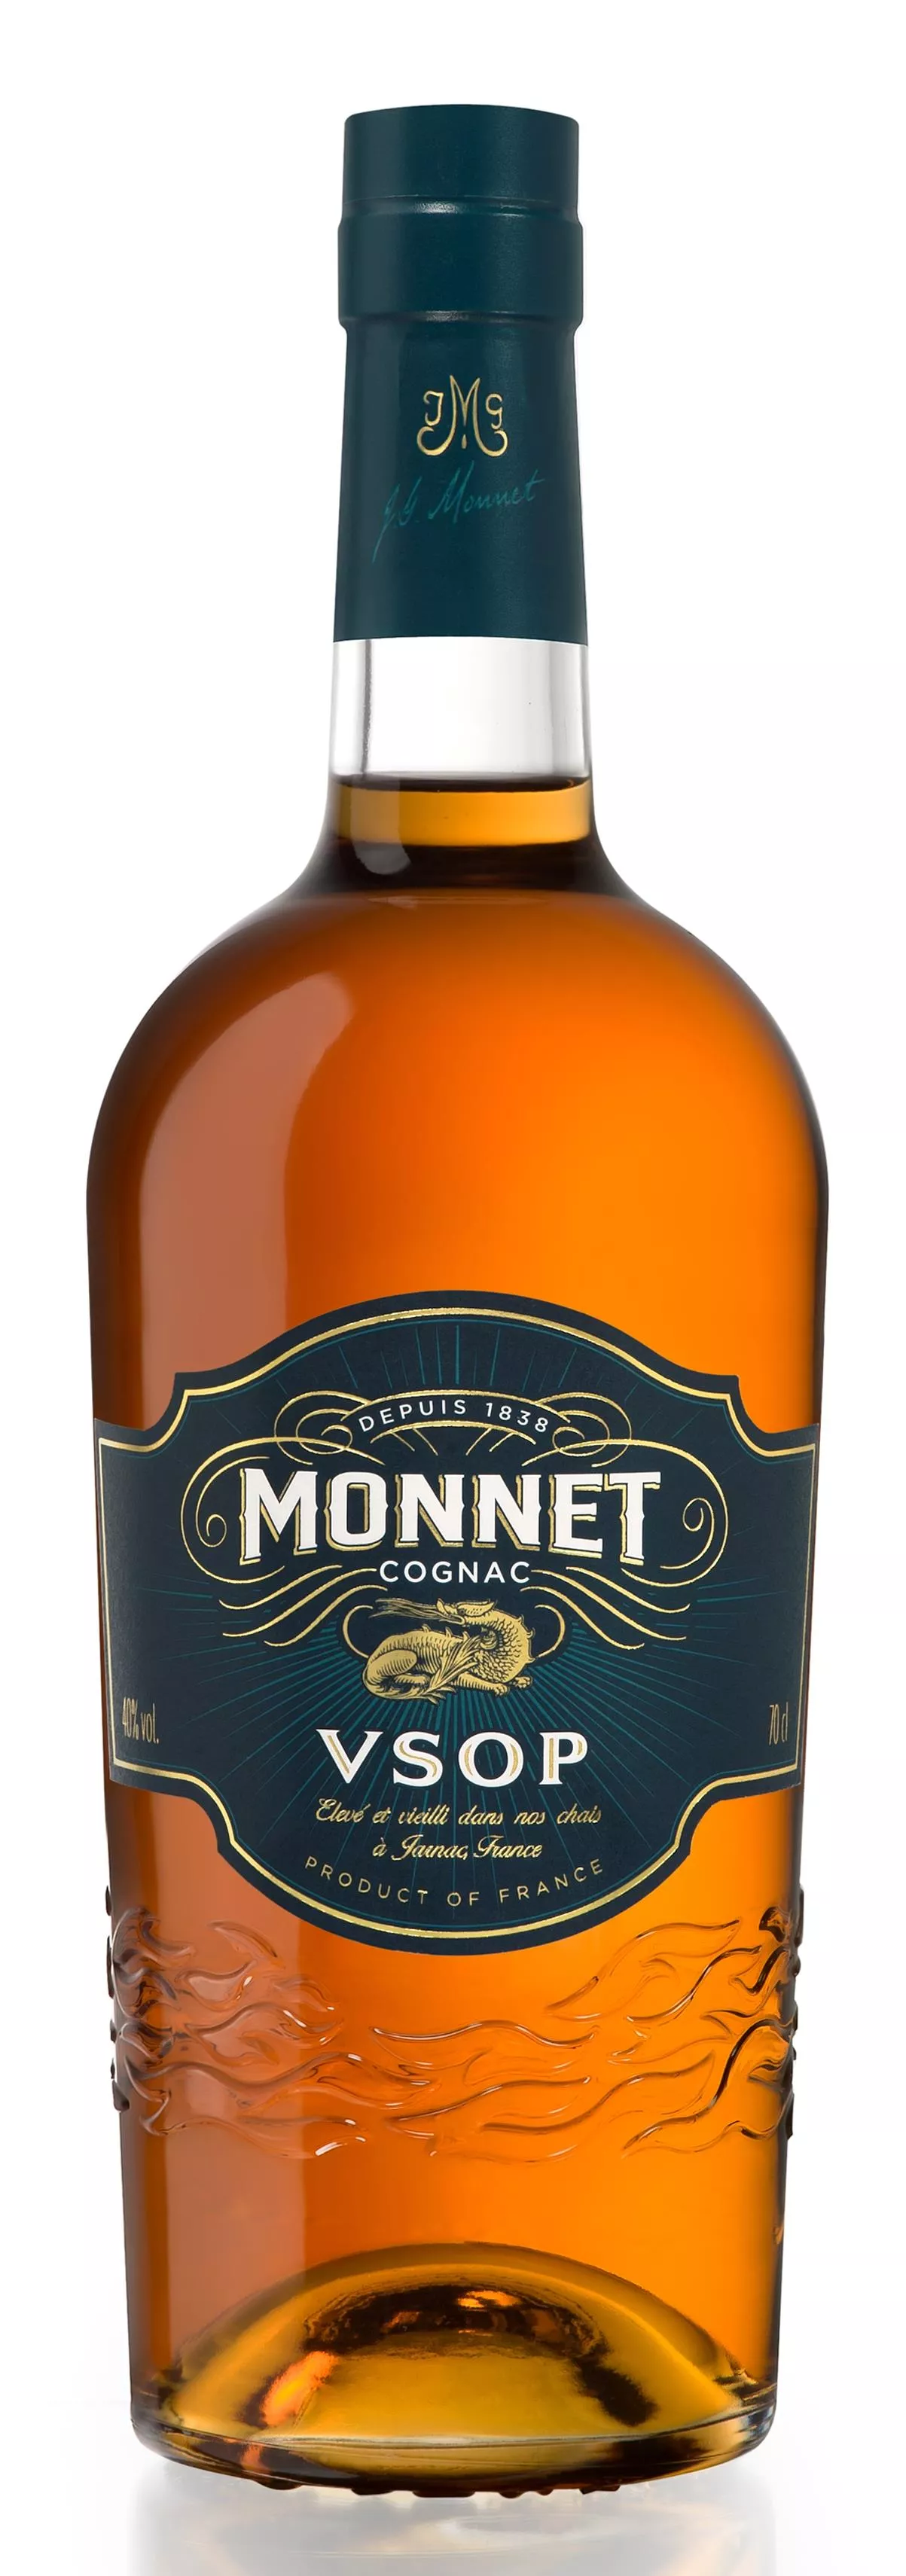 Cognac Monnet VSOP